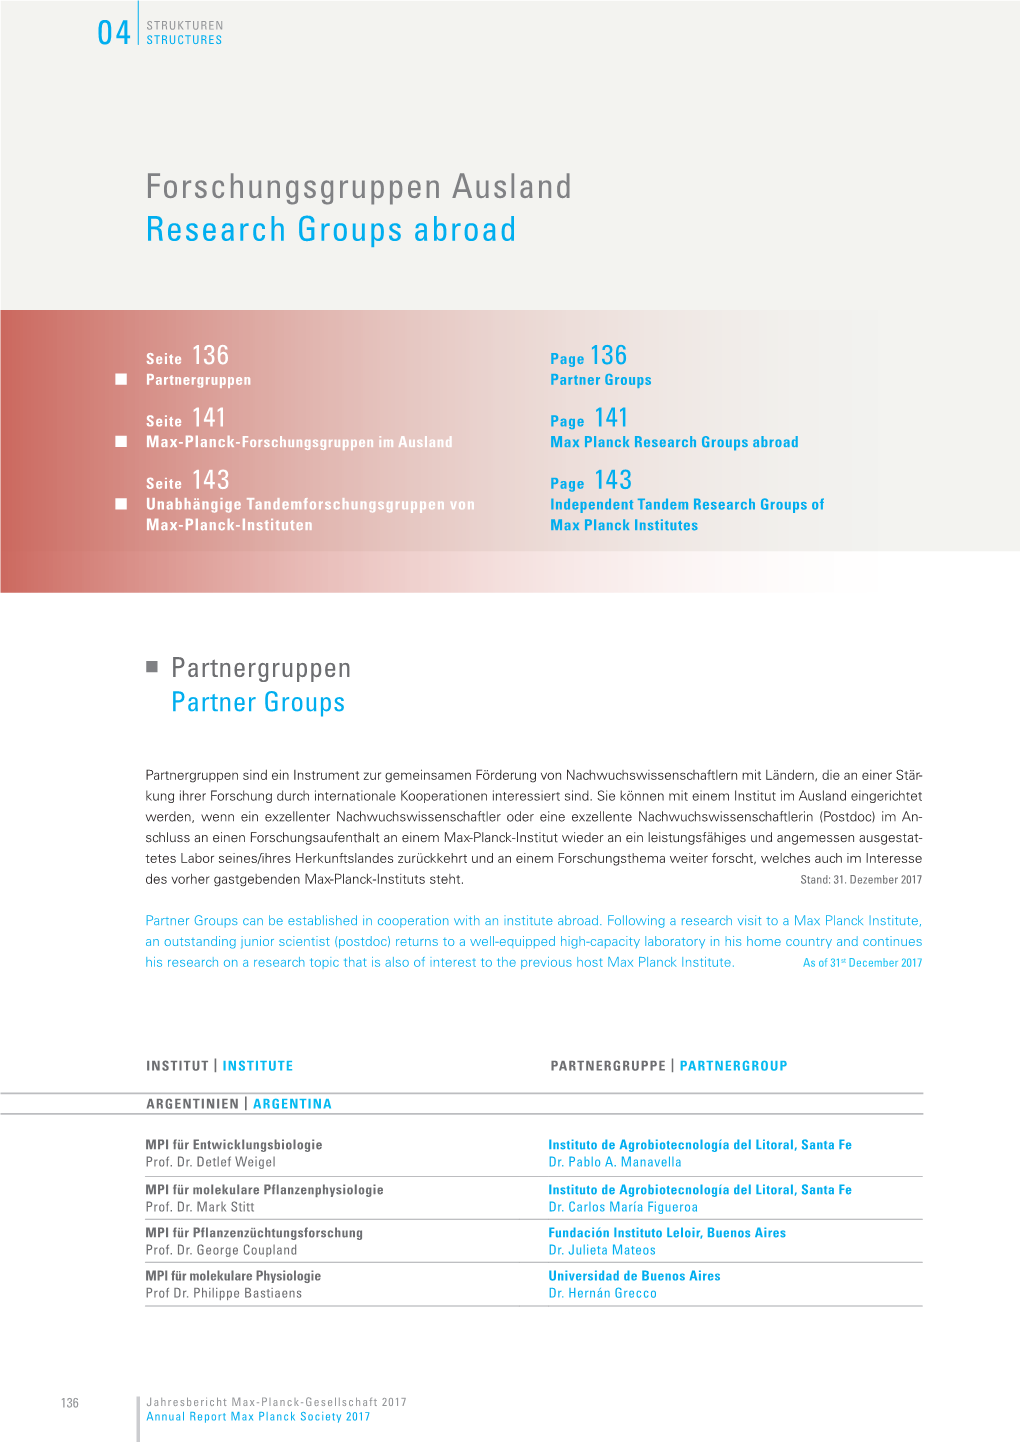 Forschungsgruppen Ausland Research Groups Abroad